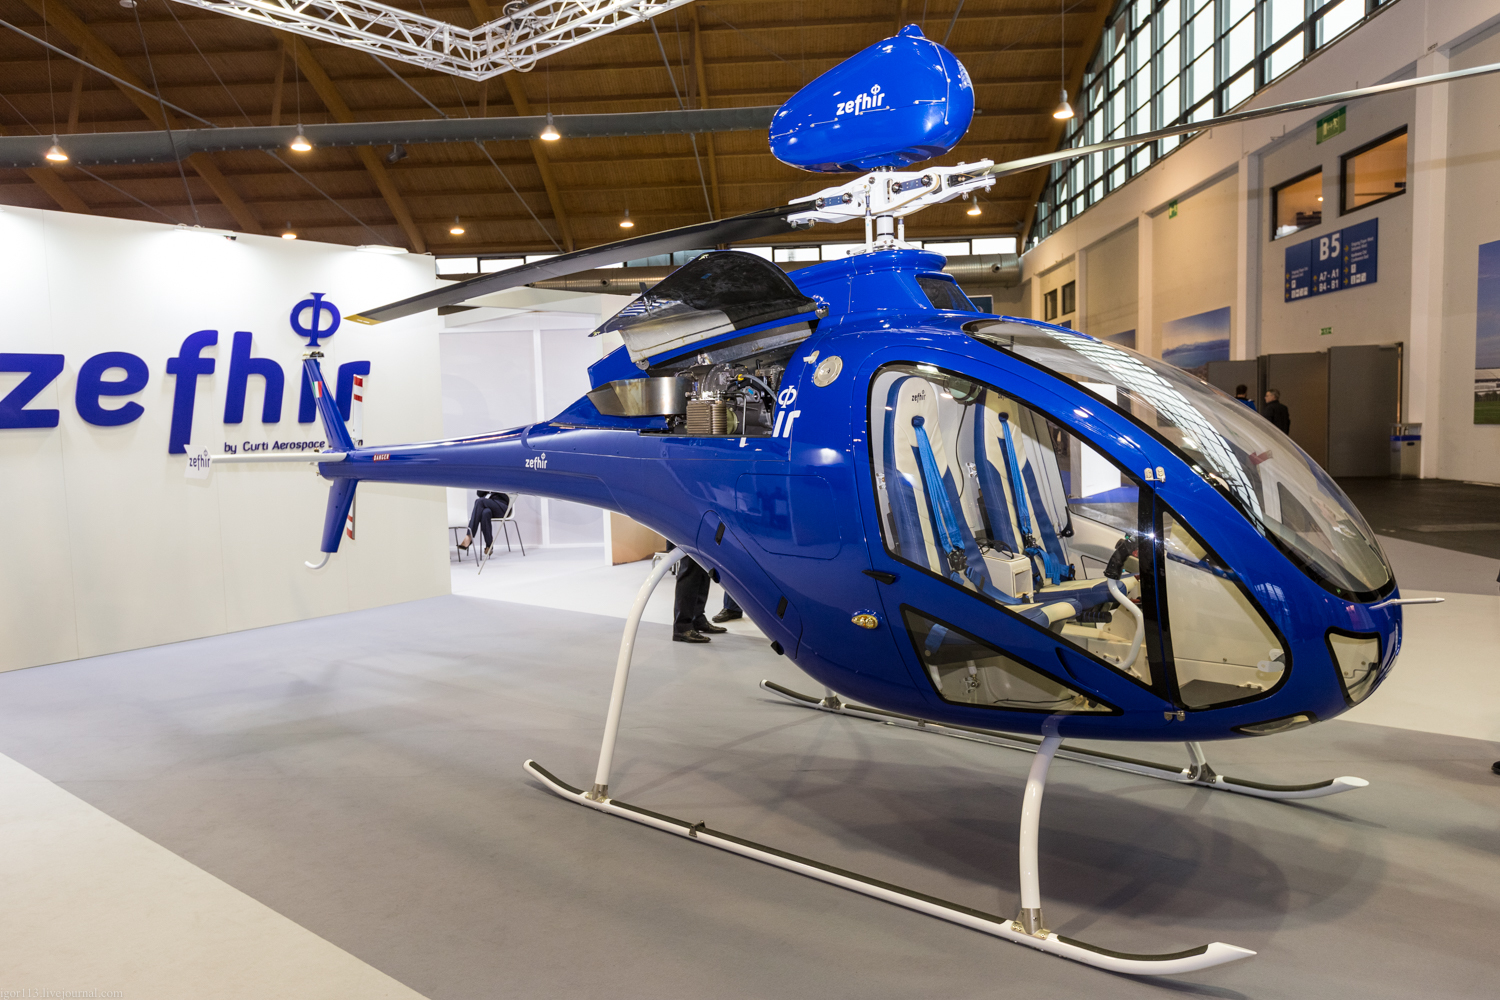 Aero-2019 Фридрисхафен: легкий итальянский турбовальный вертолет Curti Zefhir.